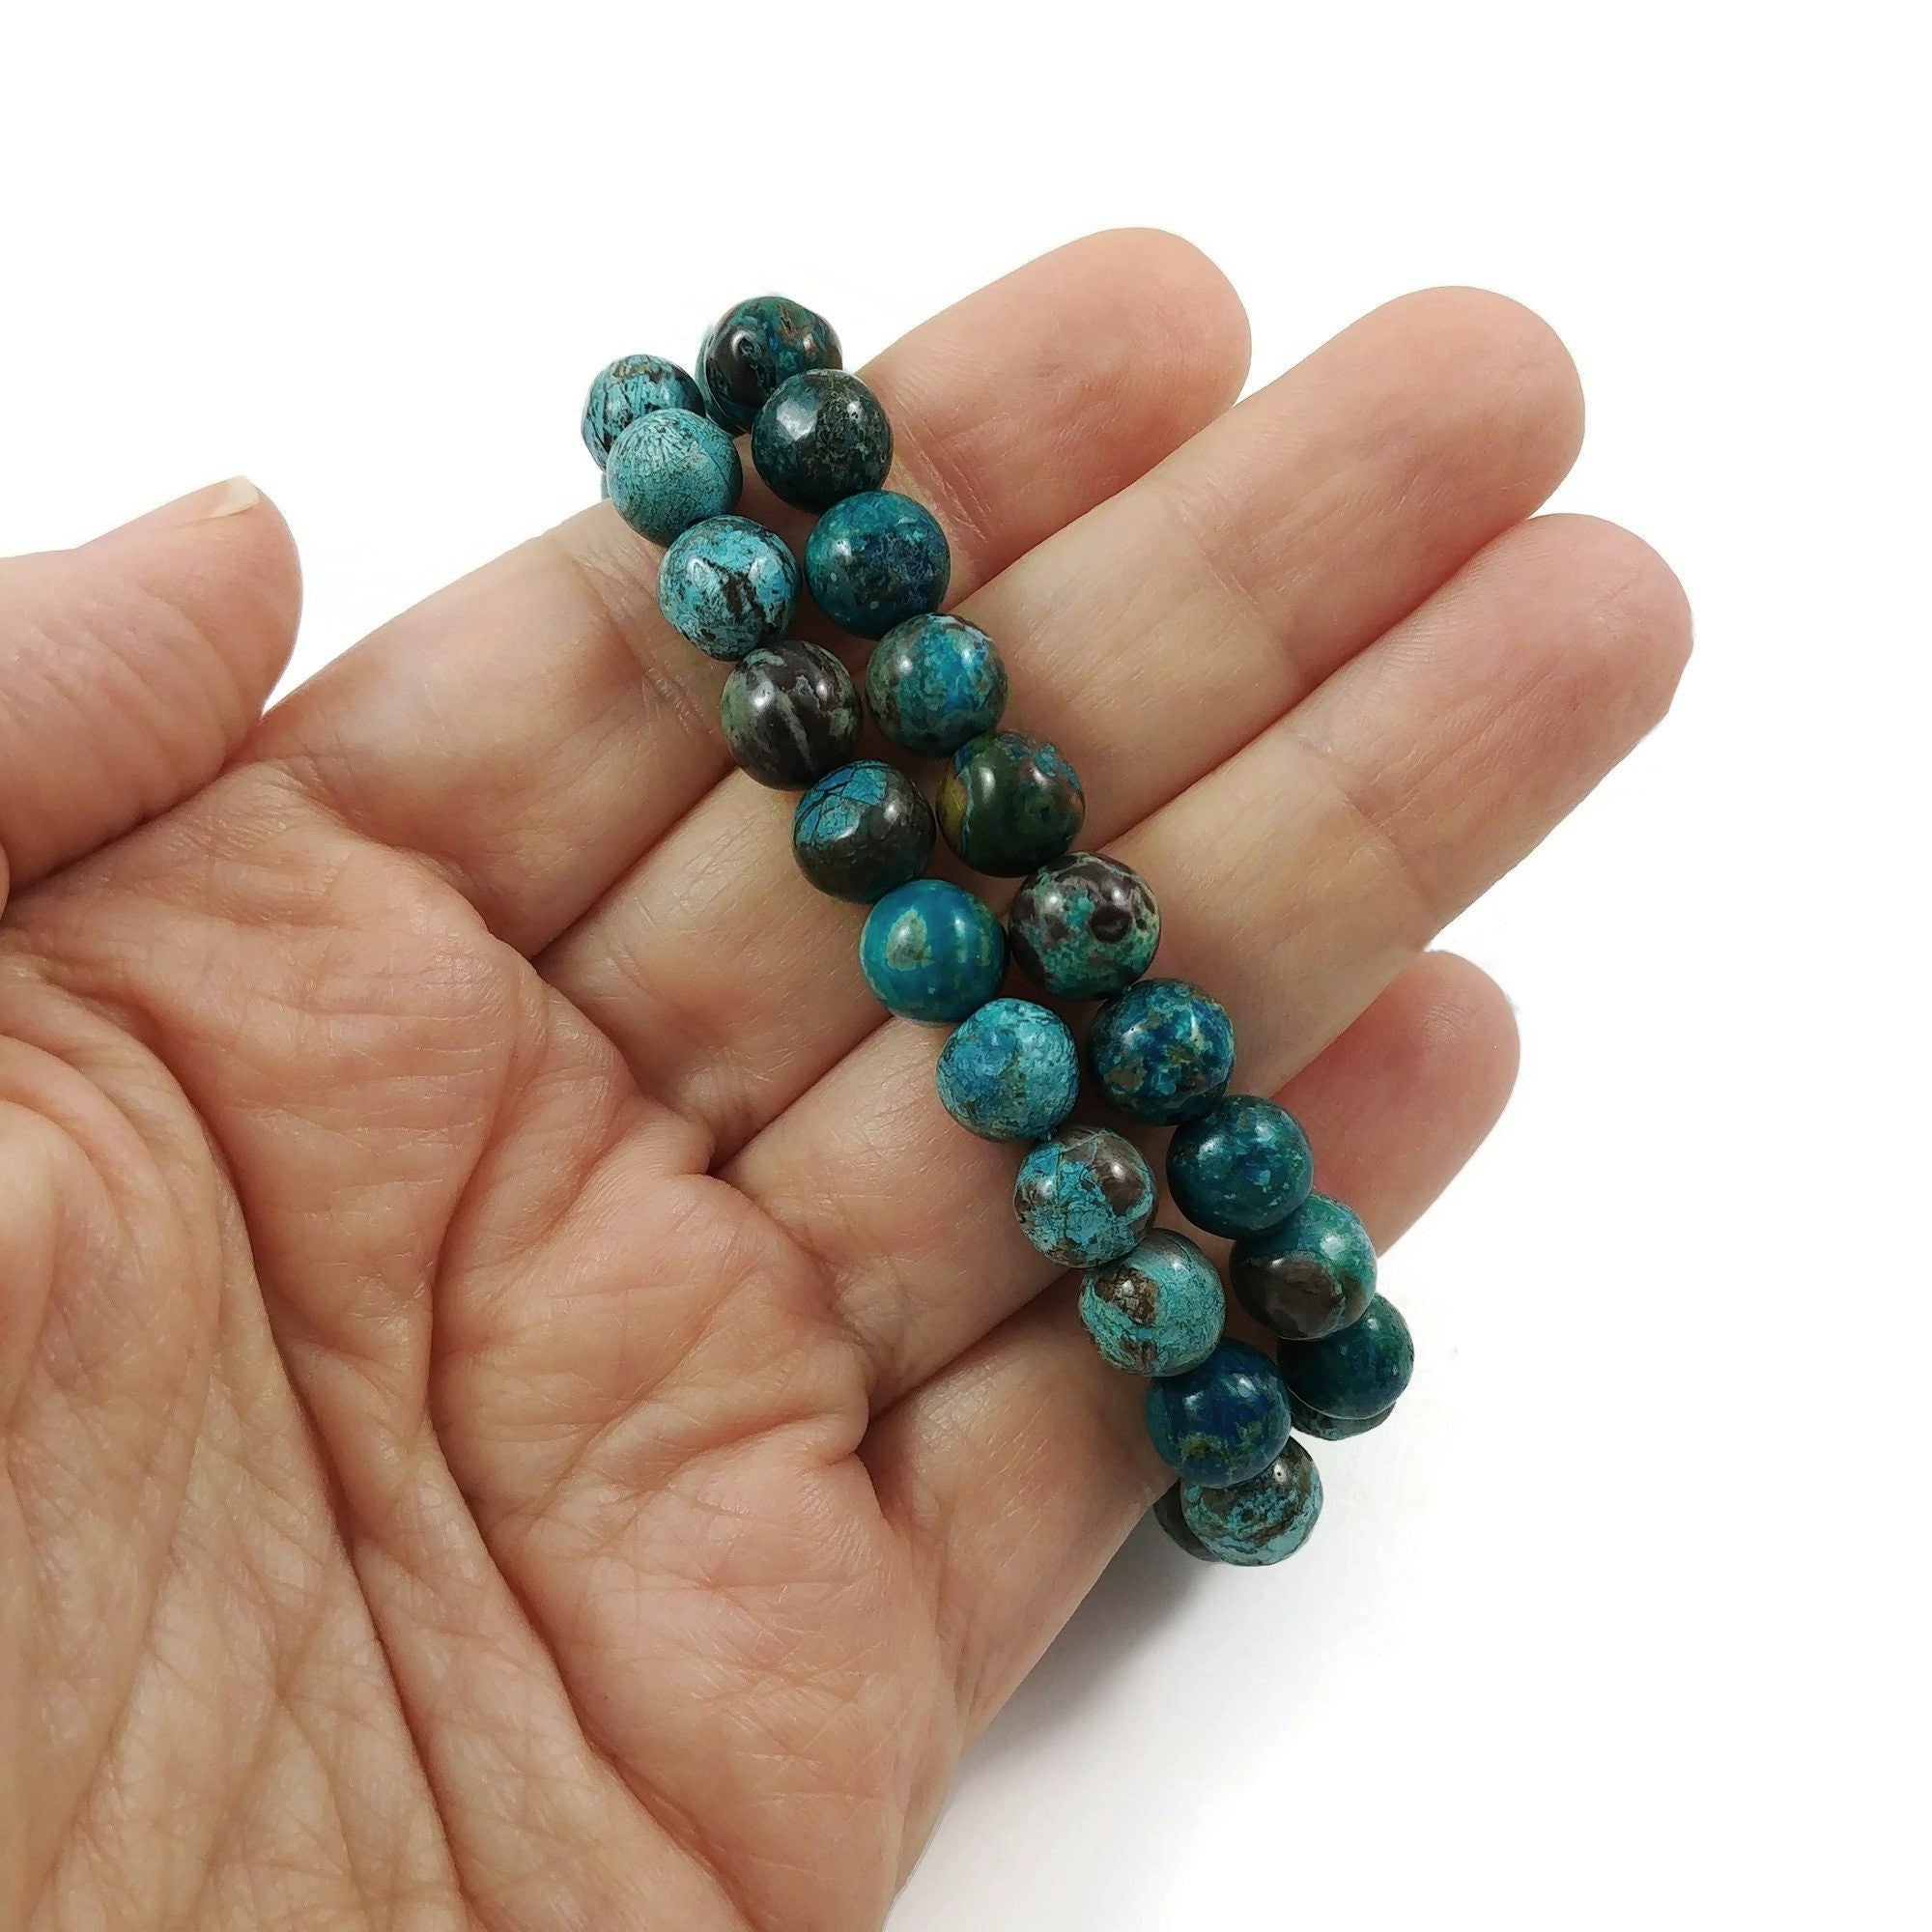 8mm emerald green ocean jasper beads